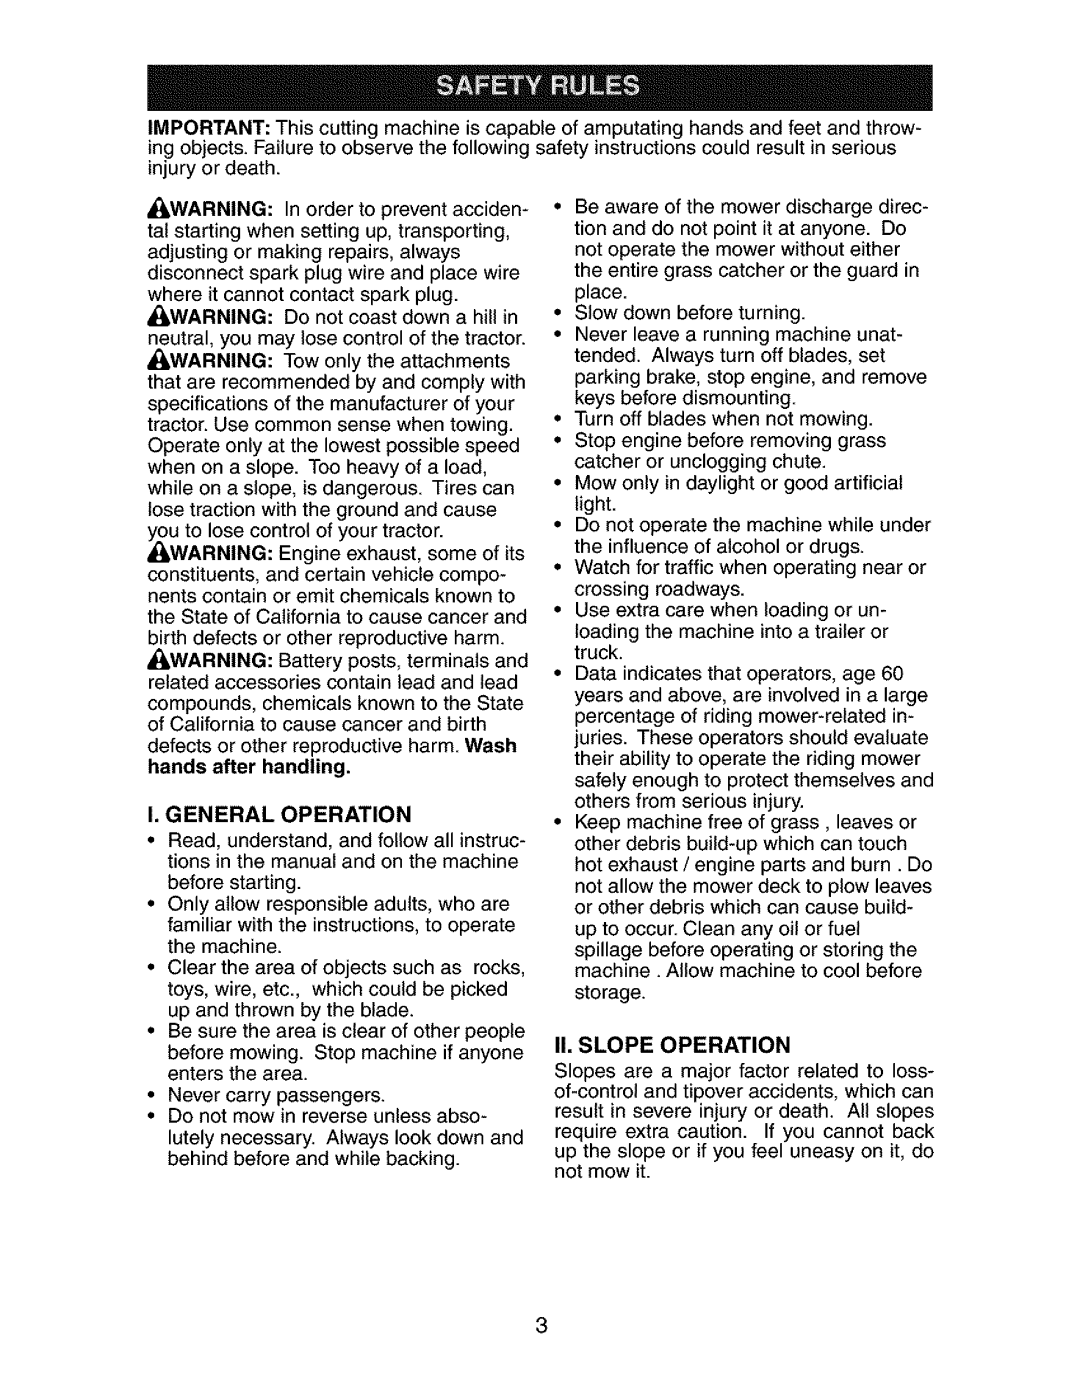 Craftsman 917.273134 owner manual I, General Operation, Ii.Slope Operation 